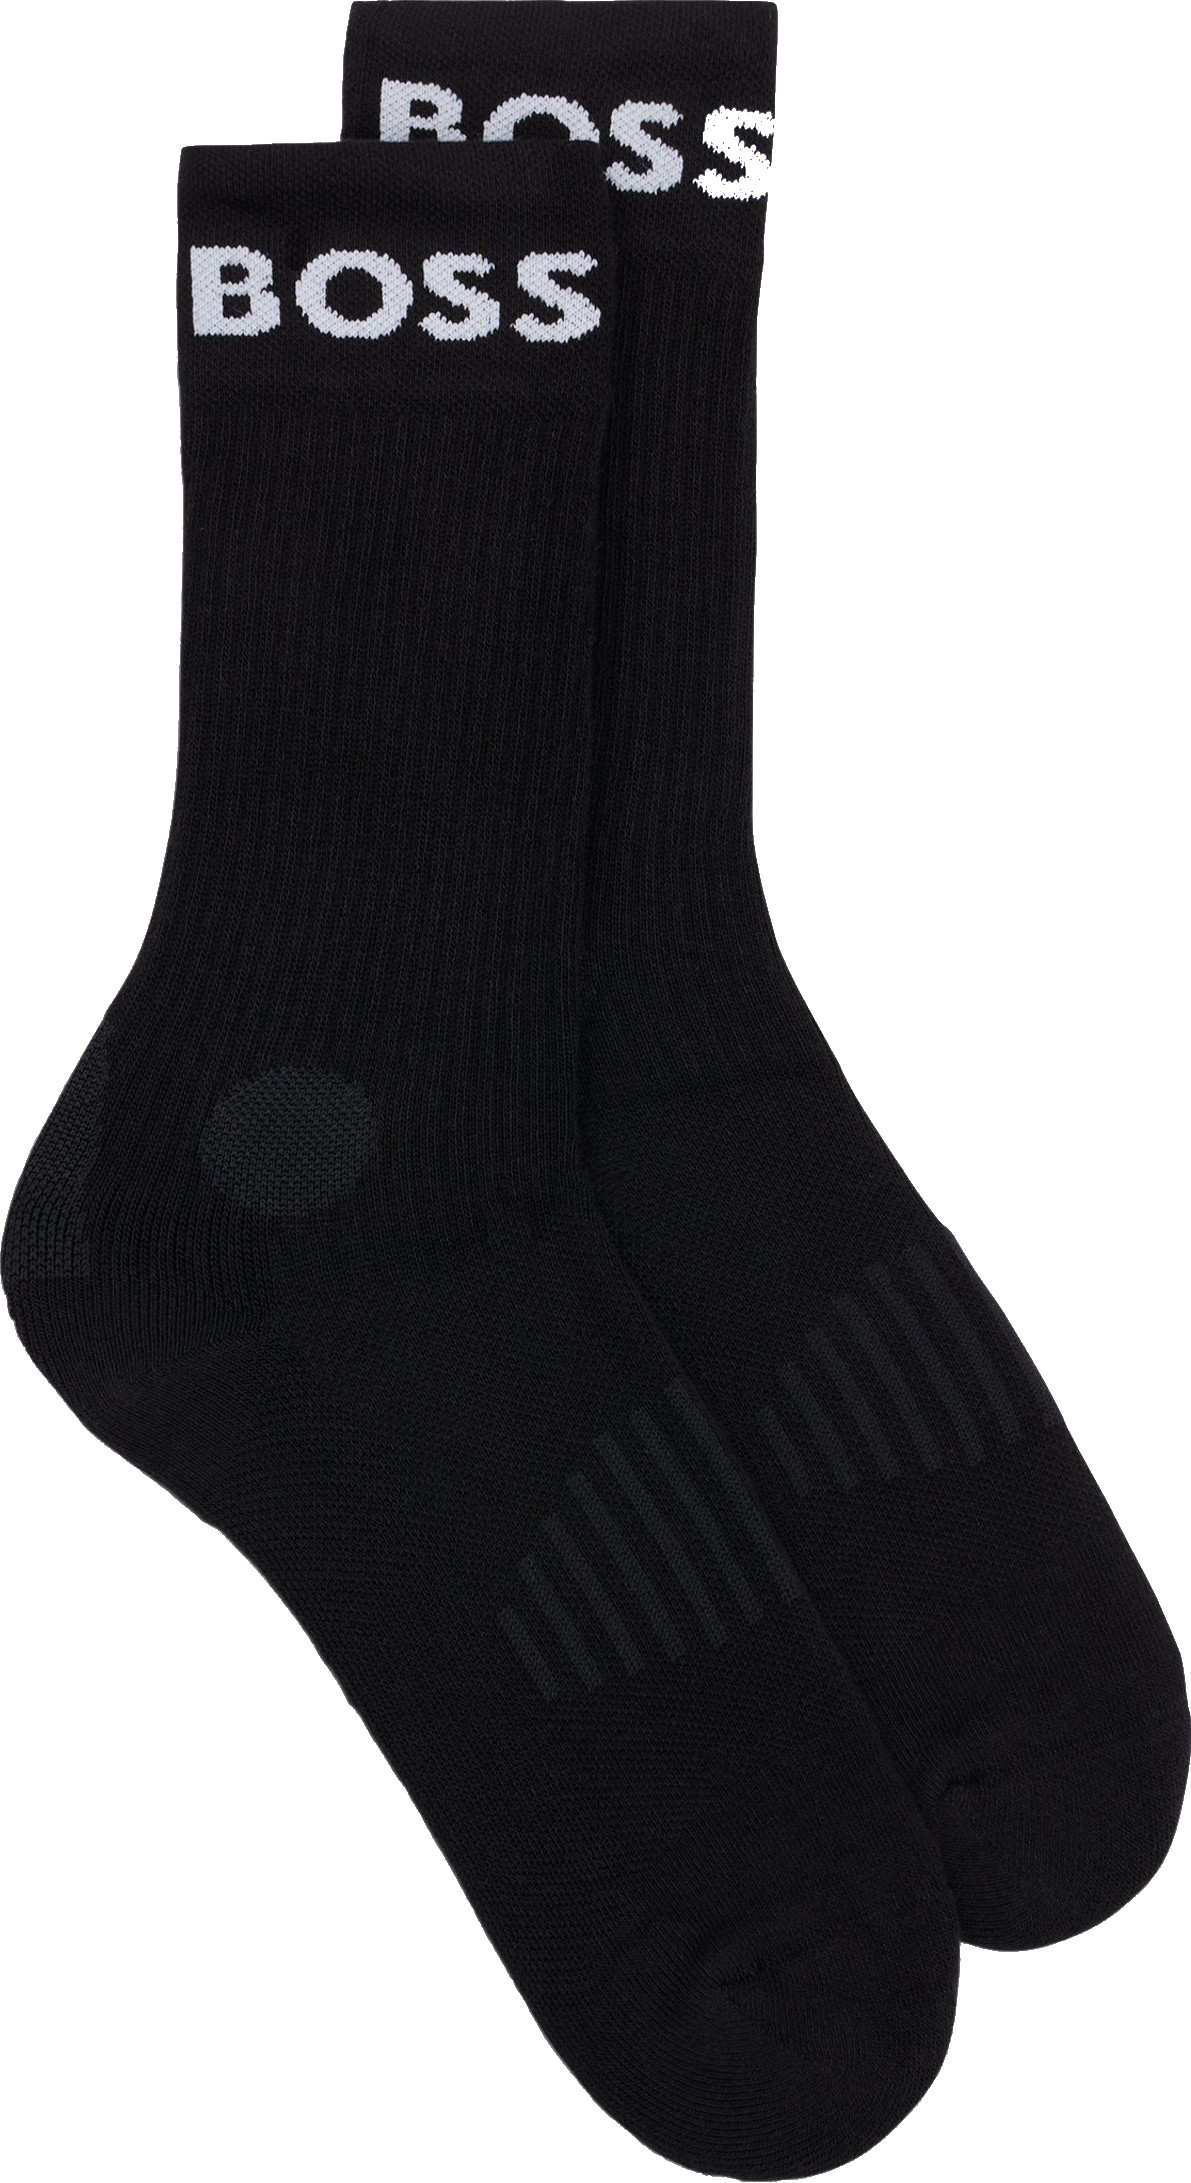 Hugo Boss 2 PACK - pánské ponožky BOSS 50469747-001 43-46